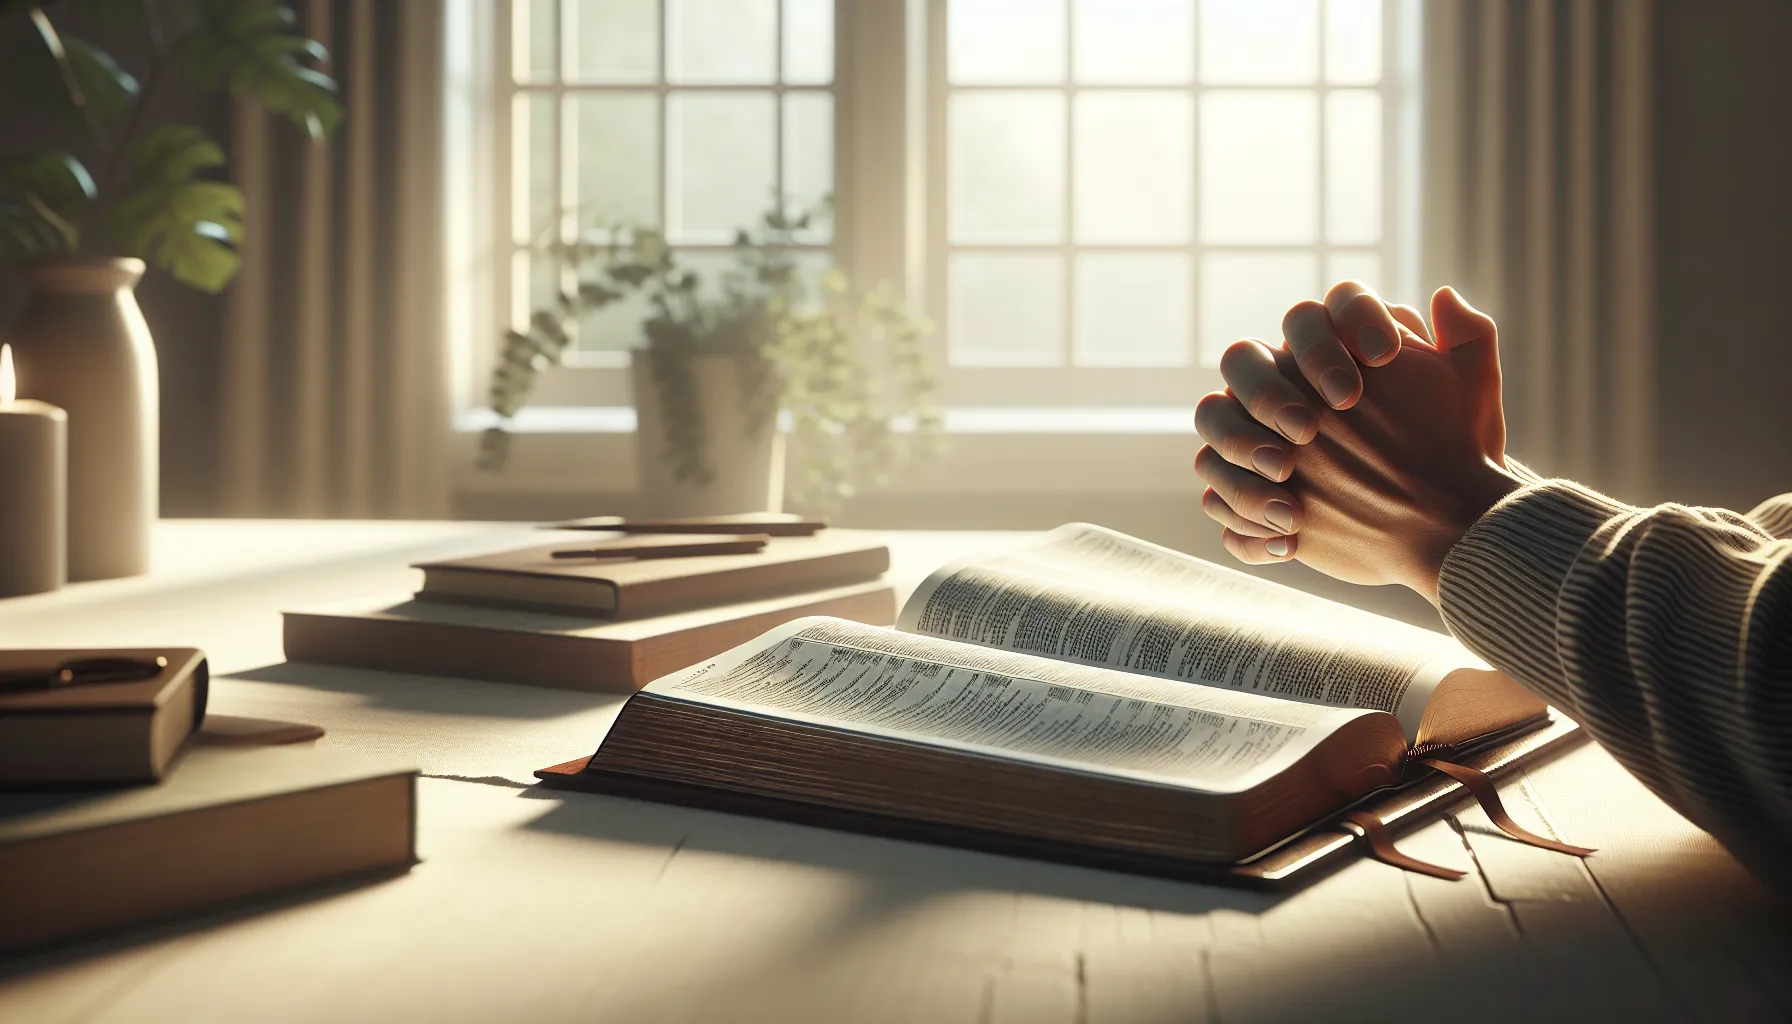 Imagen de una Biblia abierta y unas manos en posición de oración, representando el fortalecimiento de la fe y la oración según las enseñanzas bíblicas.